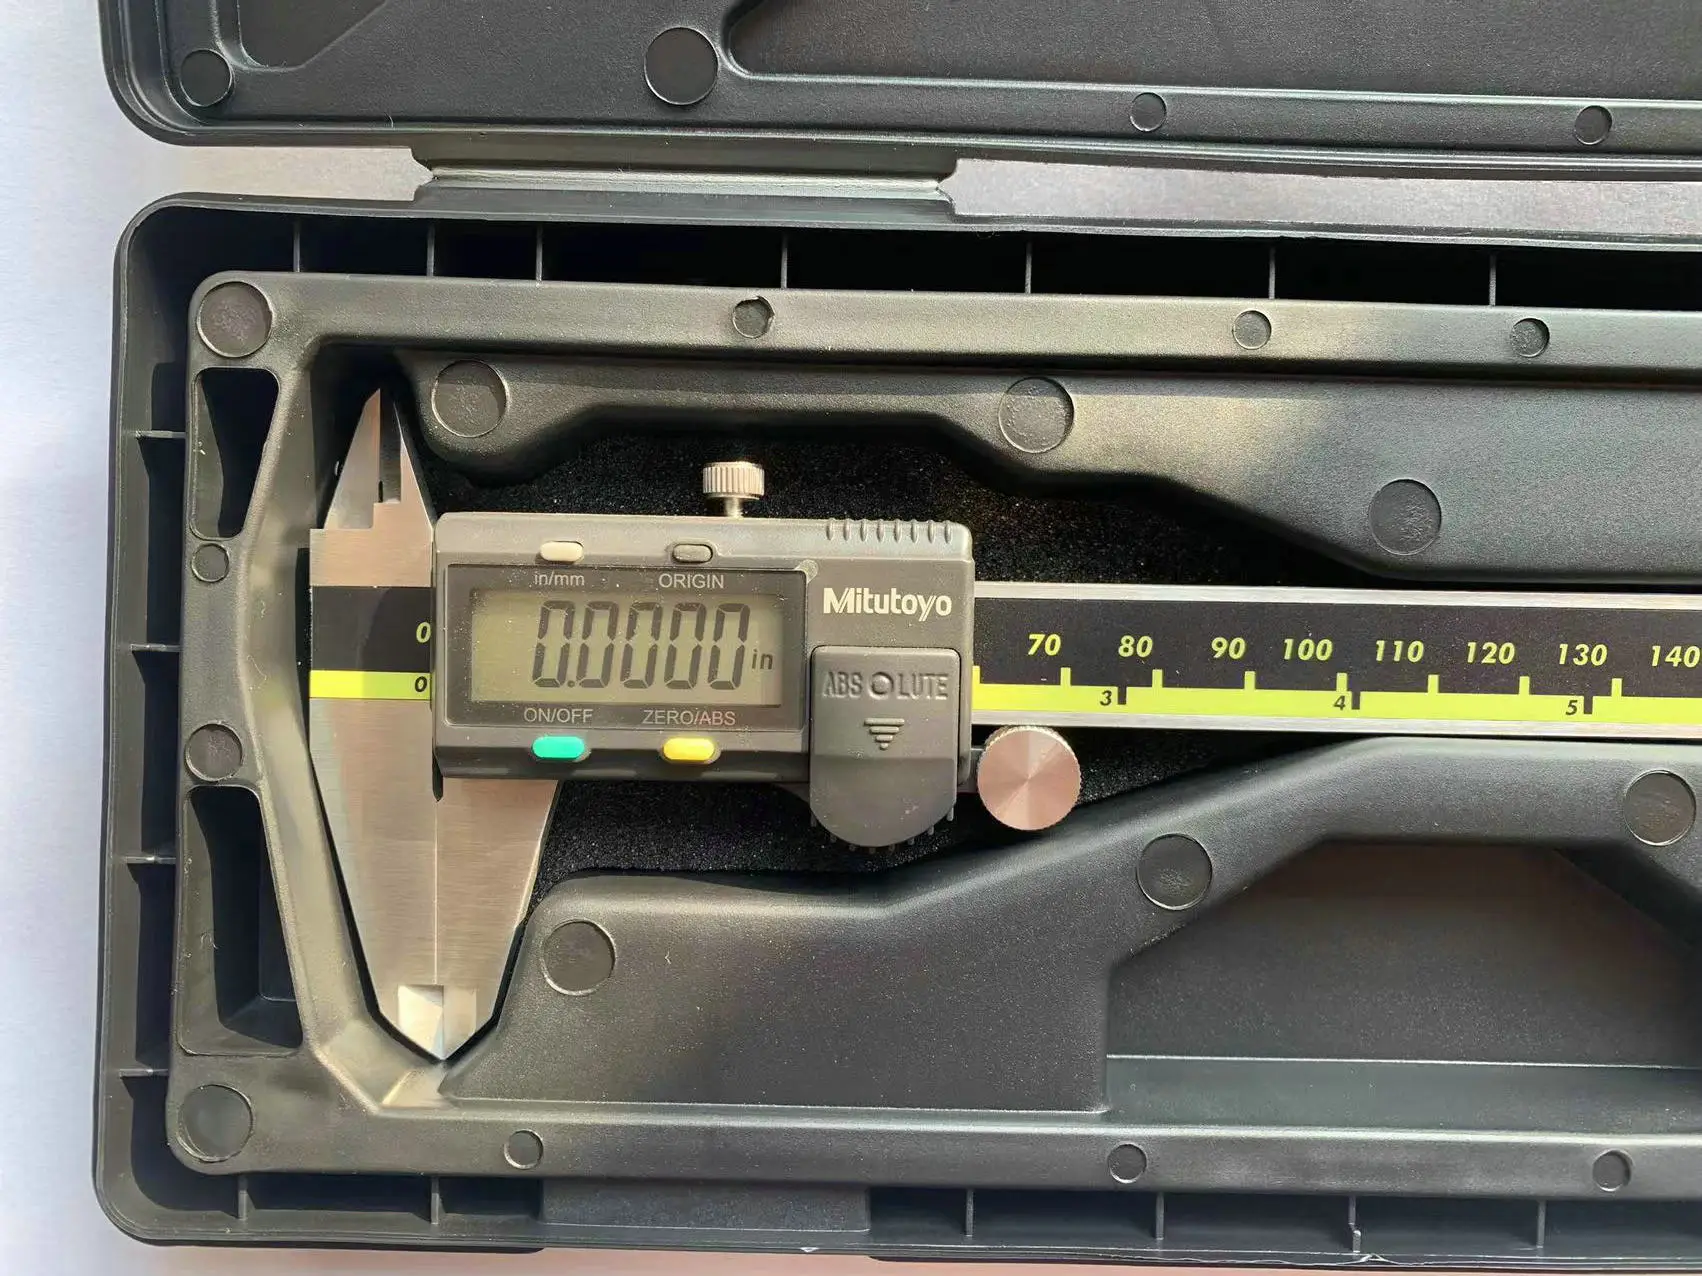 

ЖК-дисплей Mitutoyo, цифровая фотоэлектронная 500-196-20, 6 дюймов, 150 мм, 200 мм, 300 мм, измерительная ручная линейка из нержавеющей стали, инструменты 02